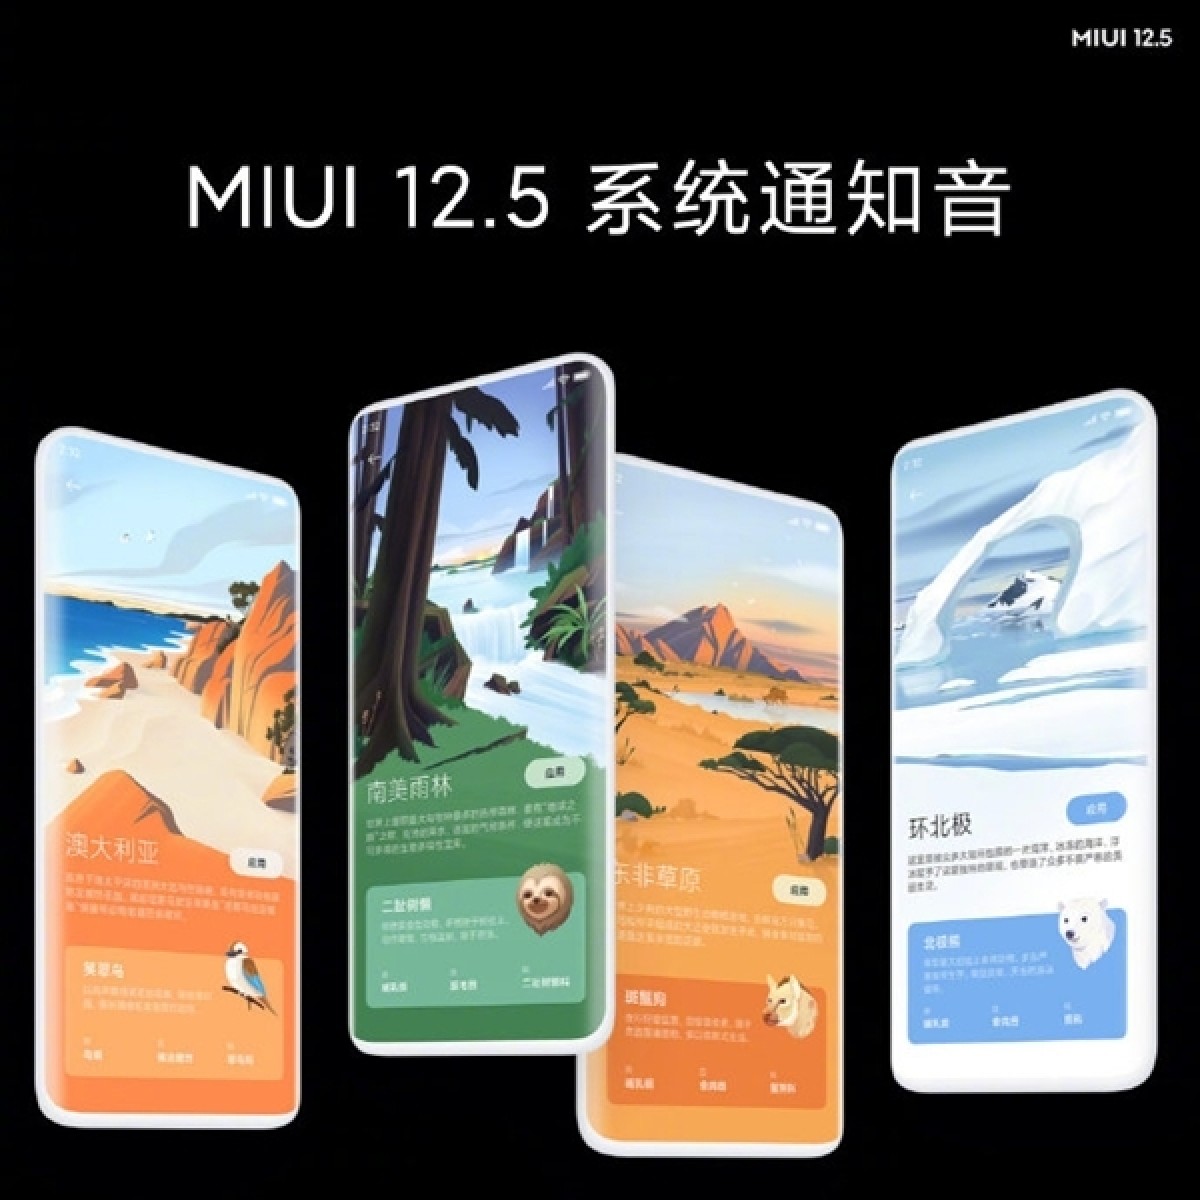 شیائومی از رابط کاربری MIUI 12.5 رونمایی کرد